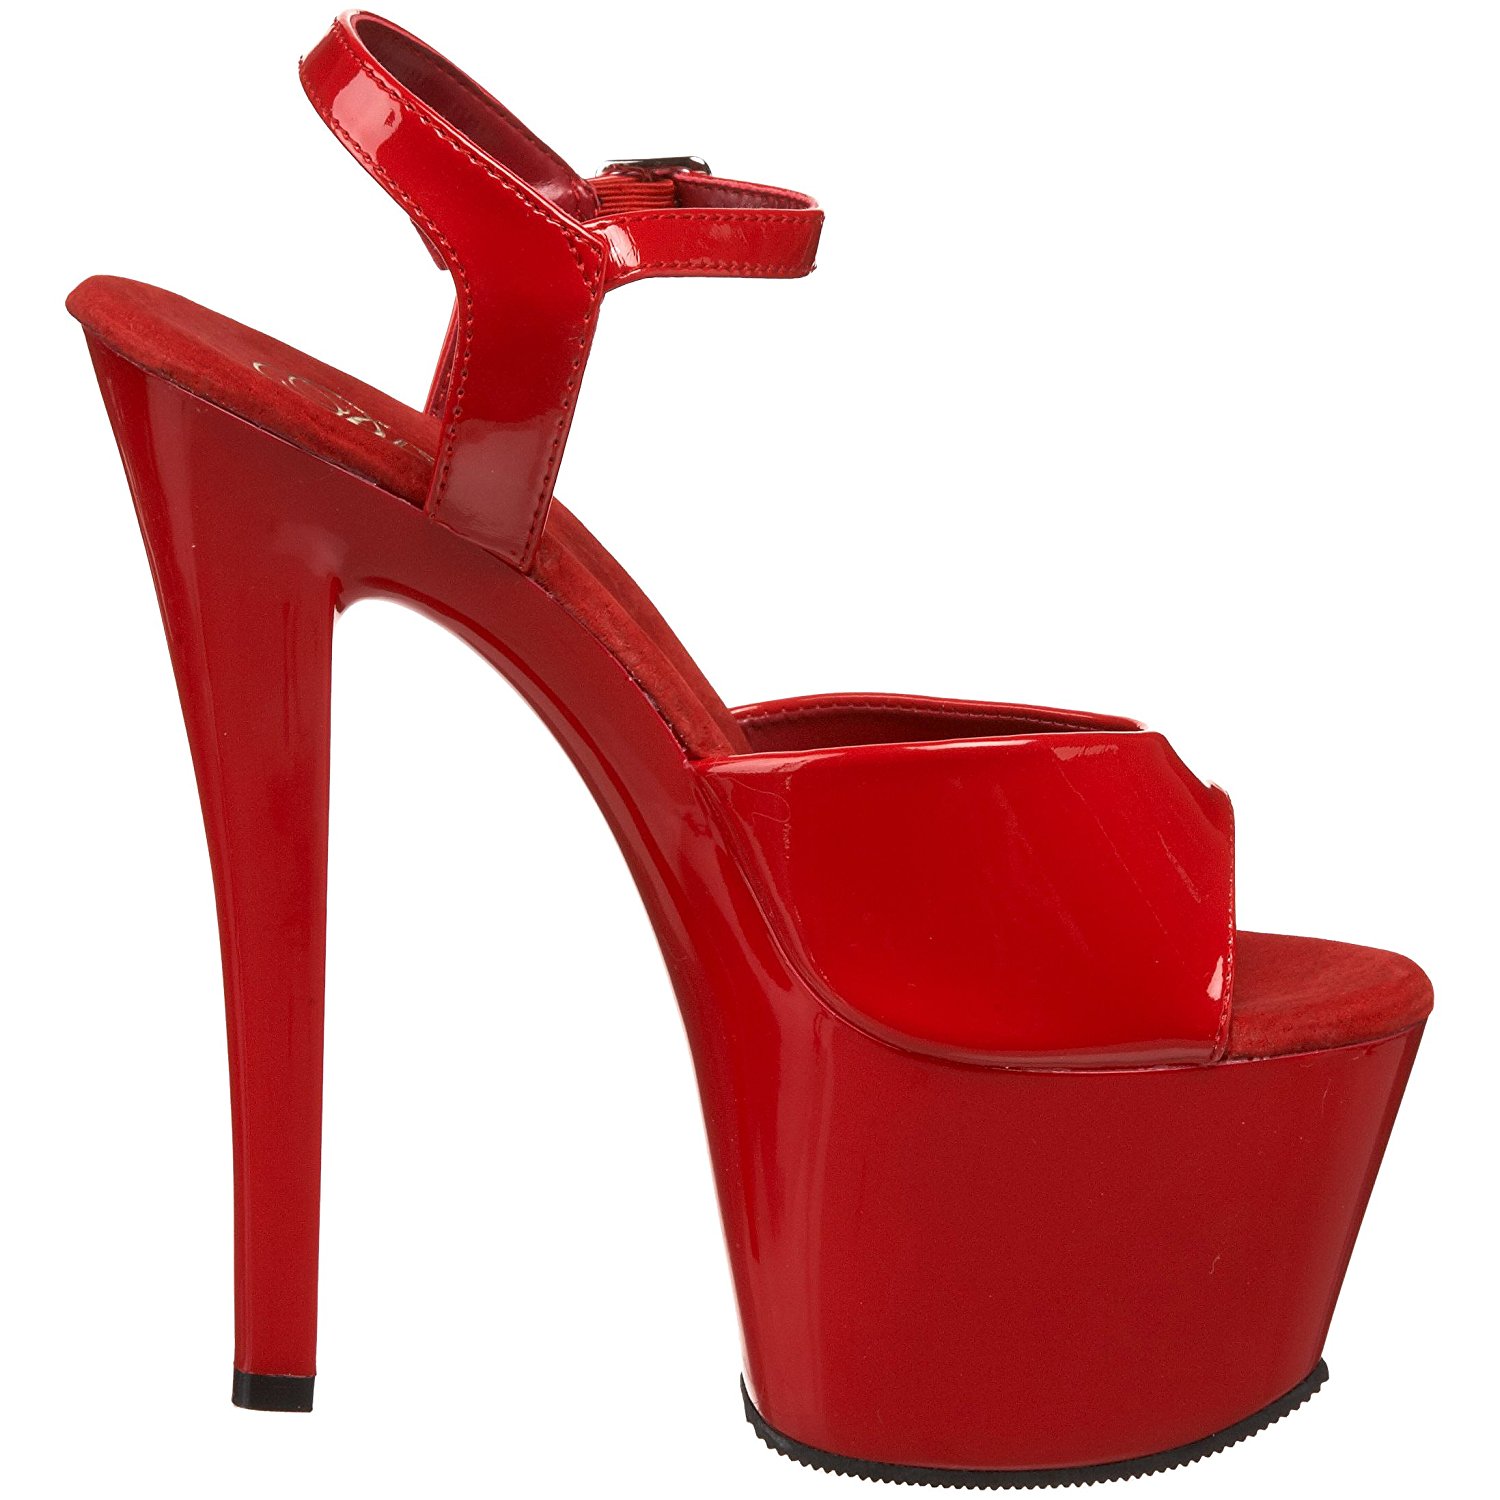 18 inch heels